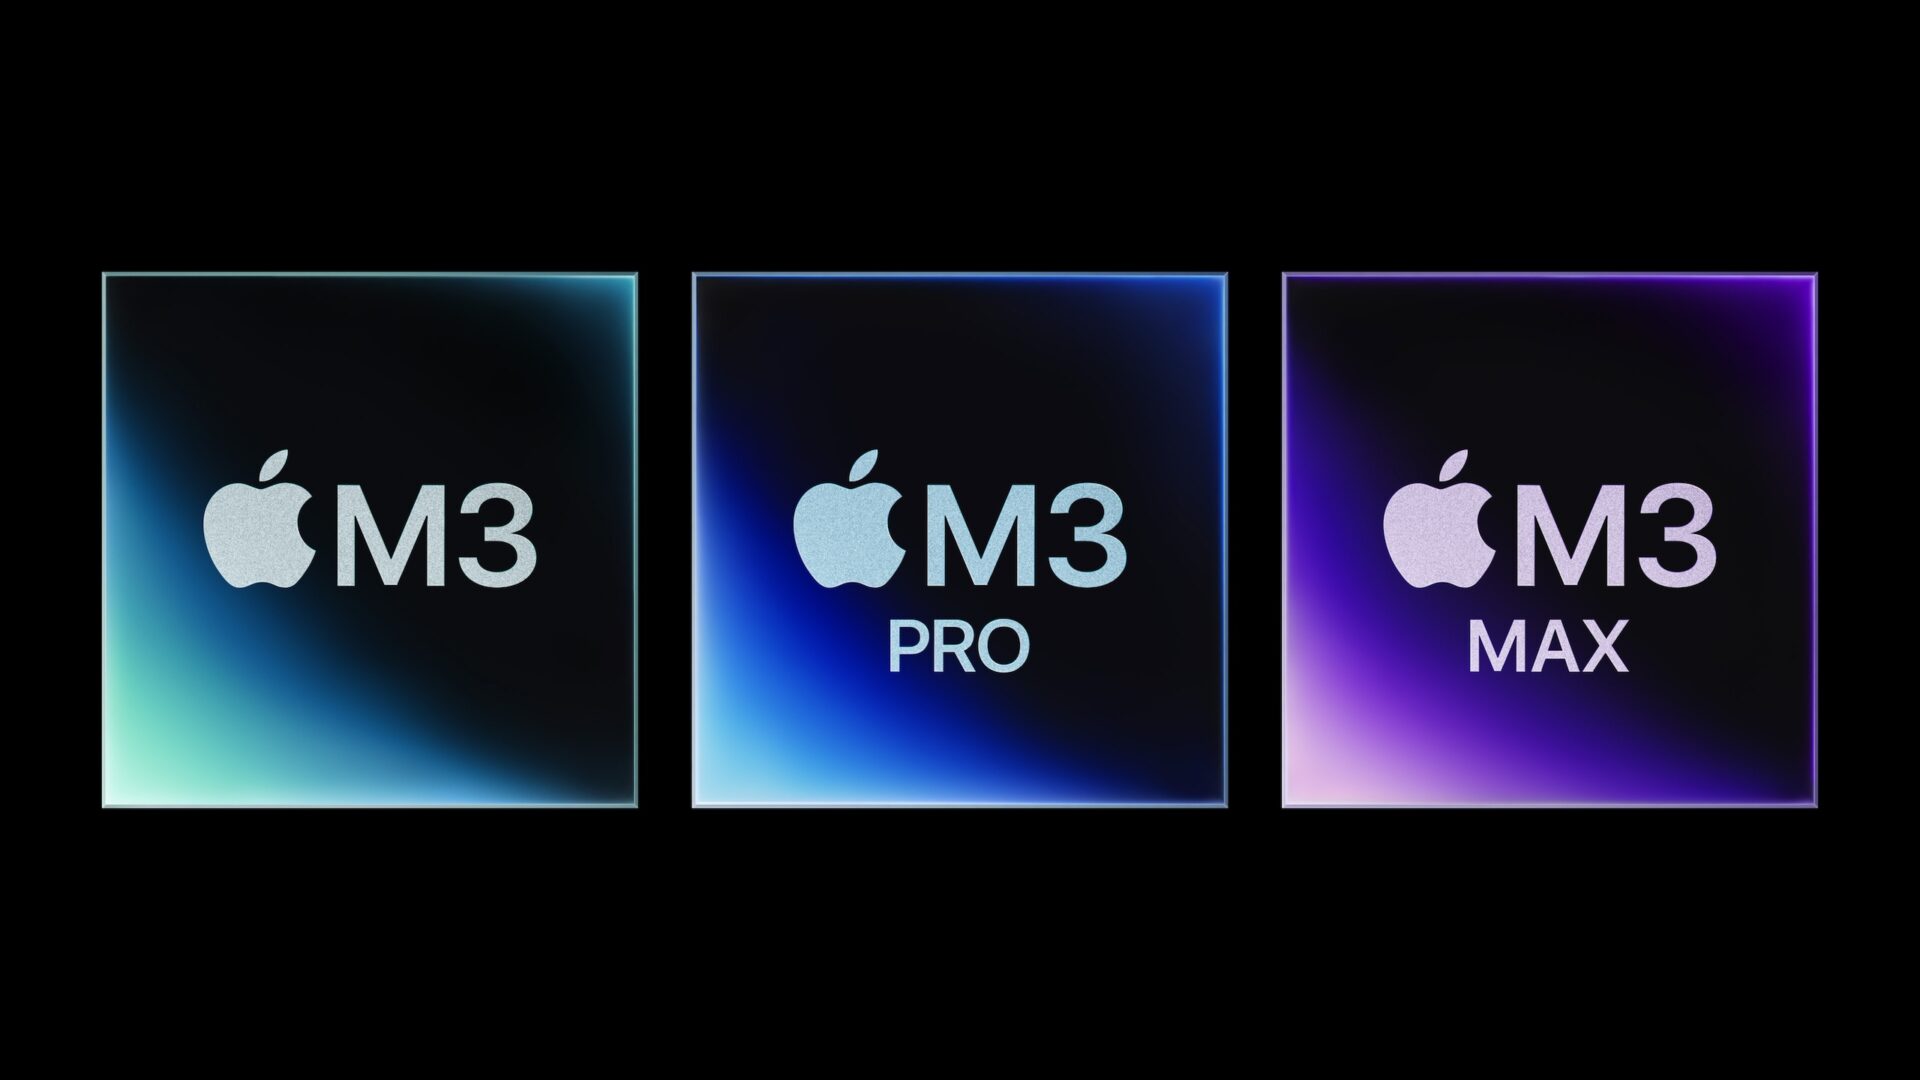 Apples nye M3-kretser fortsetter å imponere